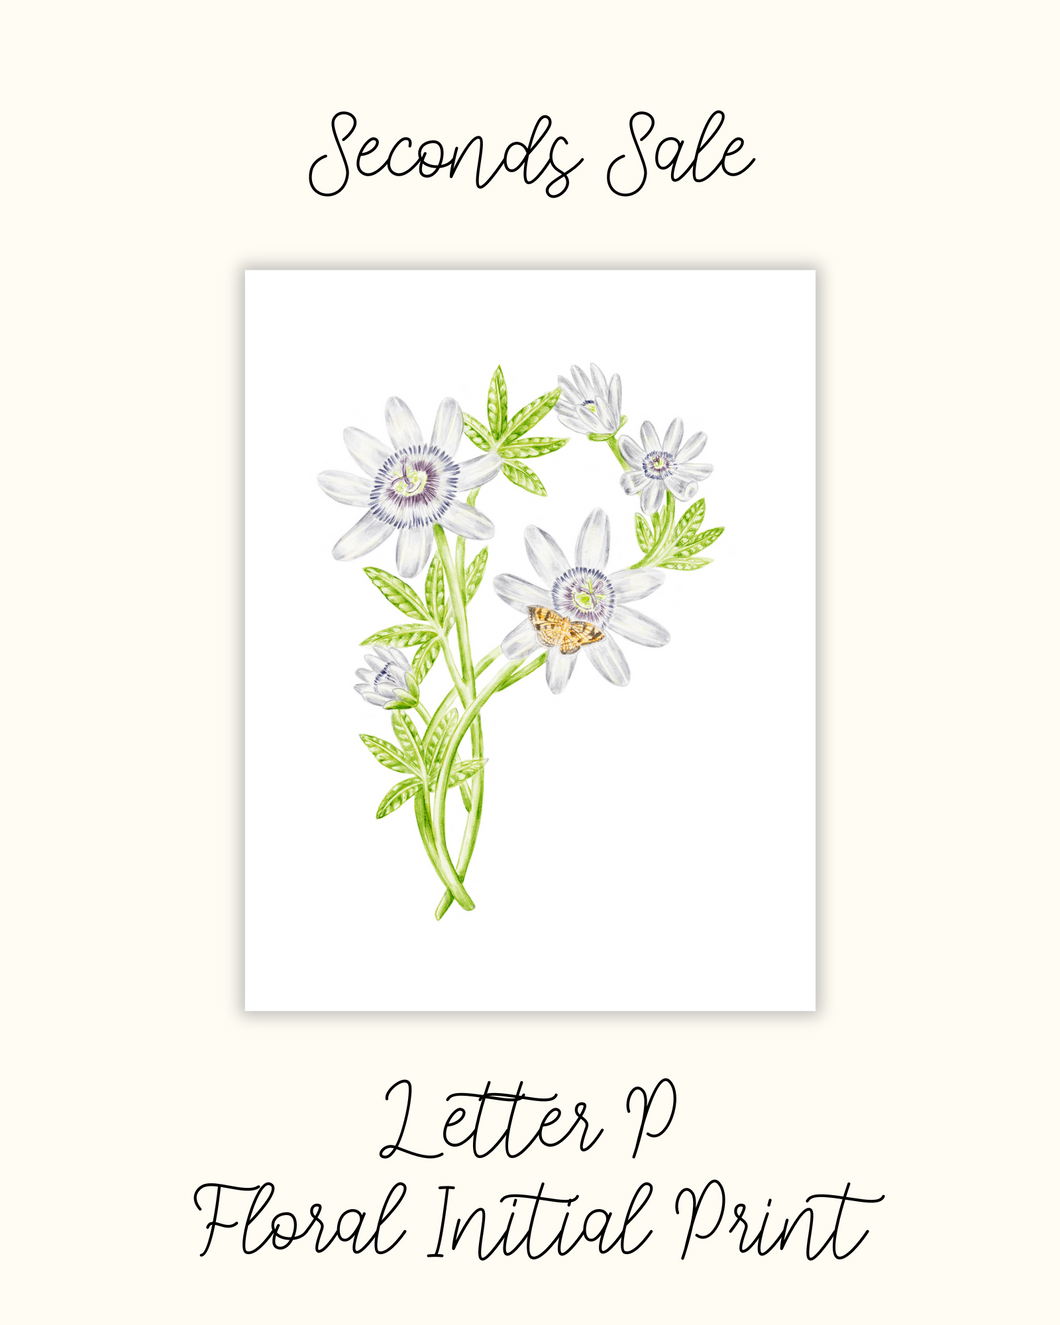 Letter P Floral Initial Print - Seconds Sale